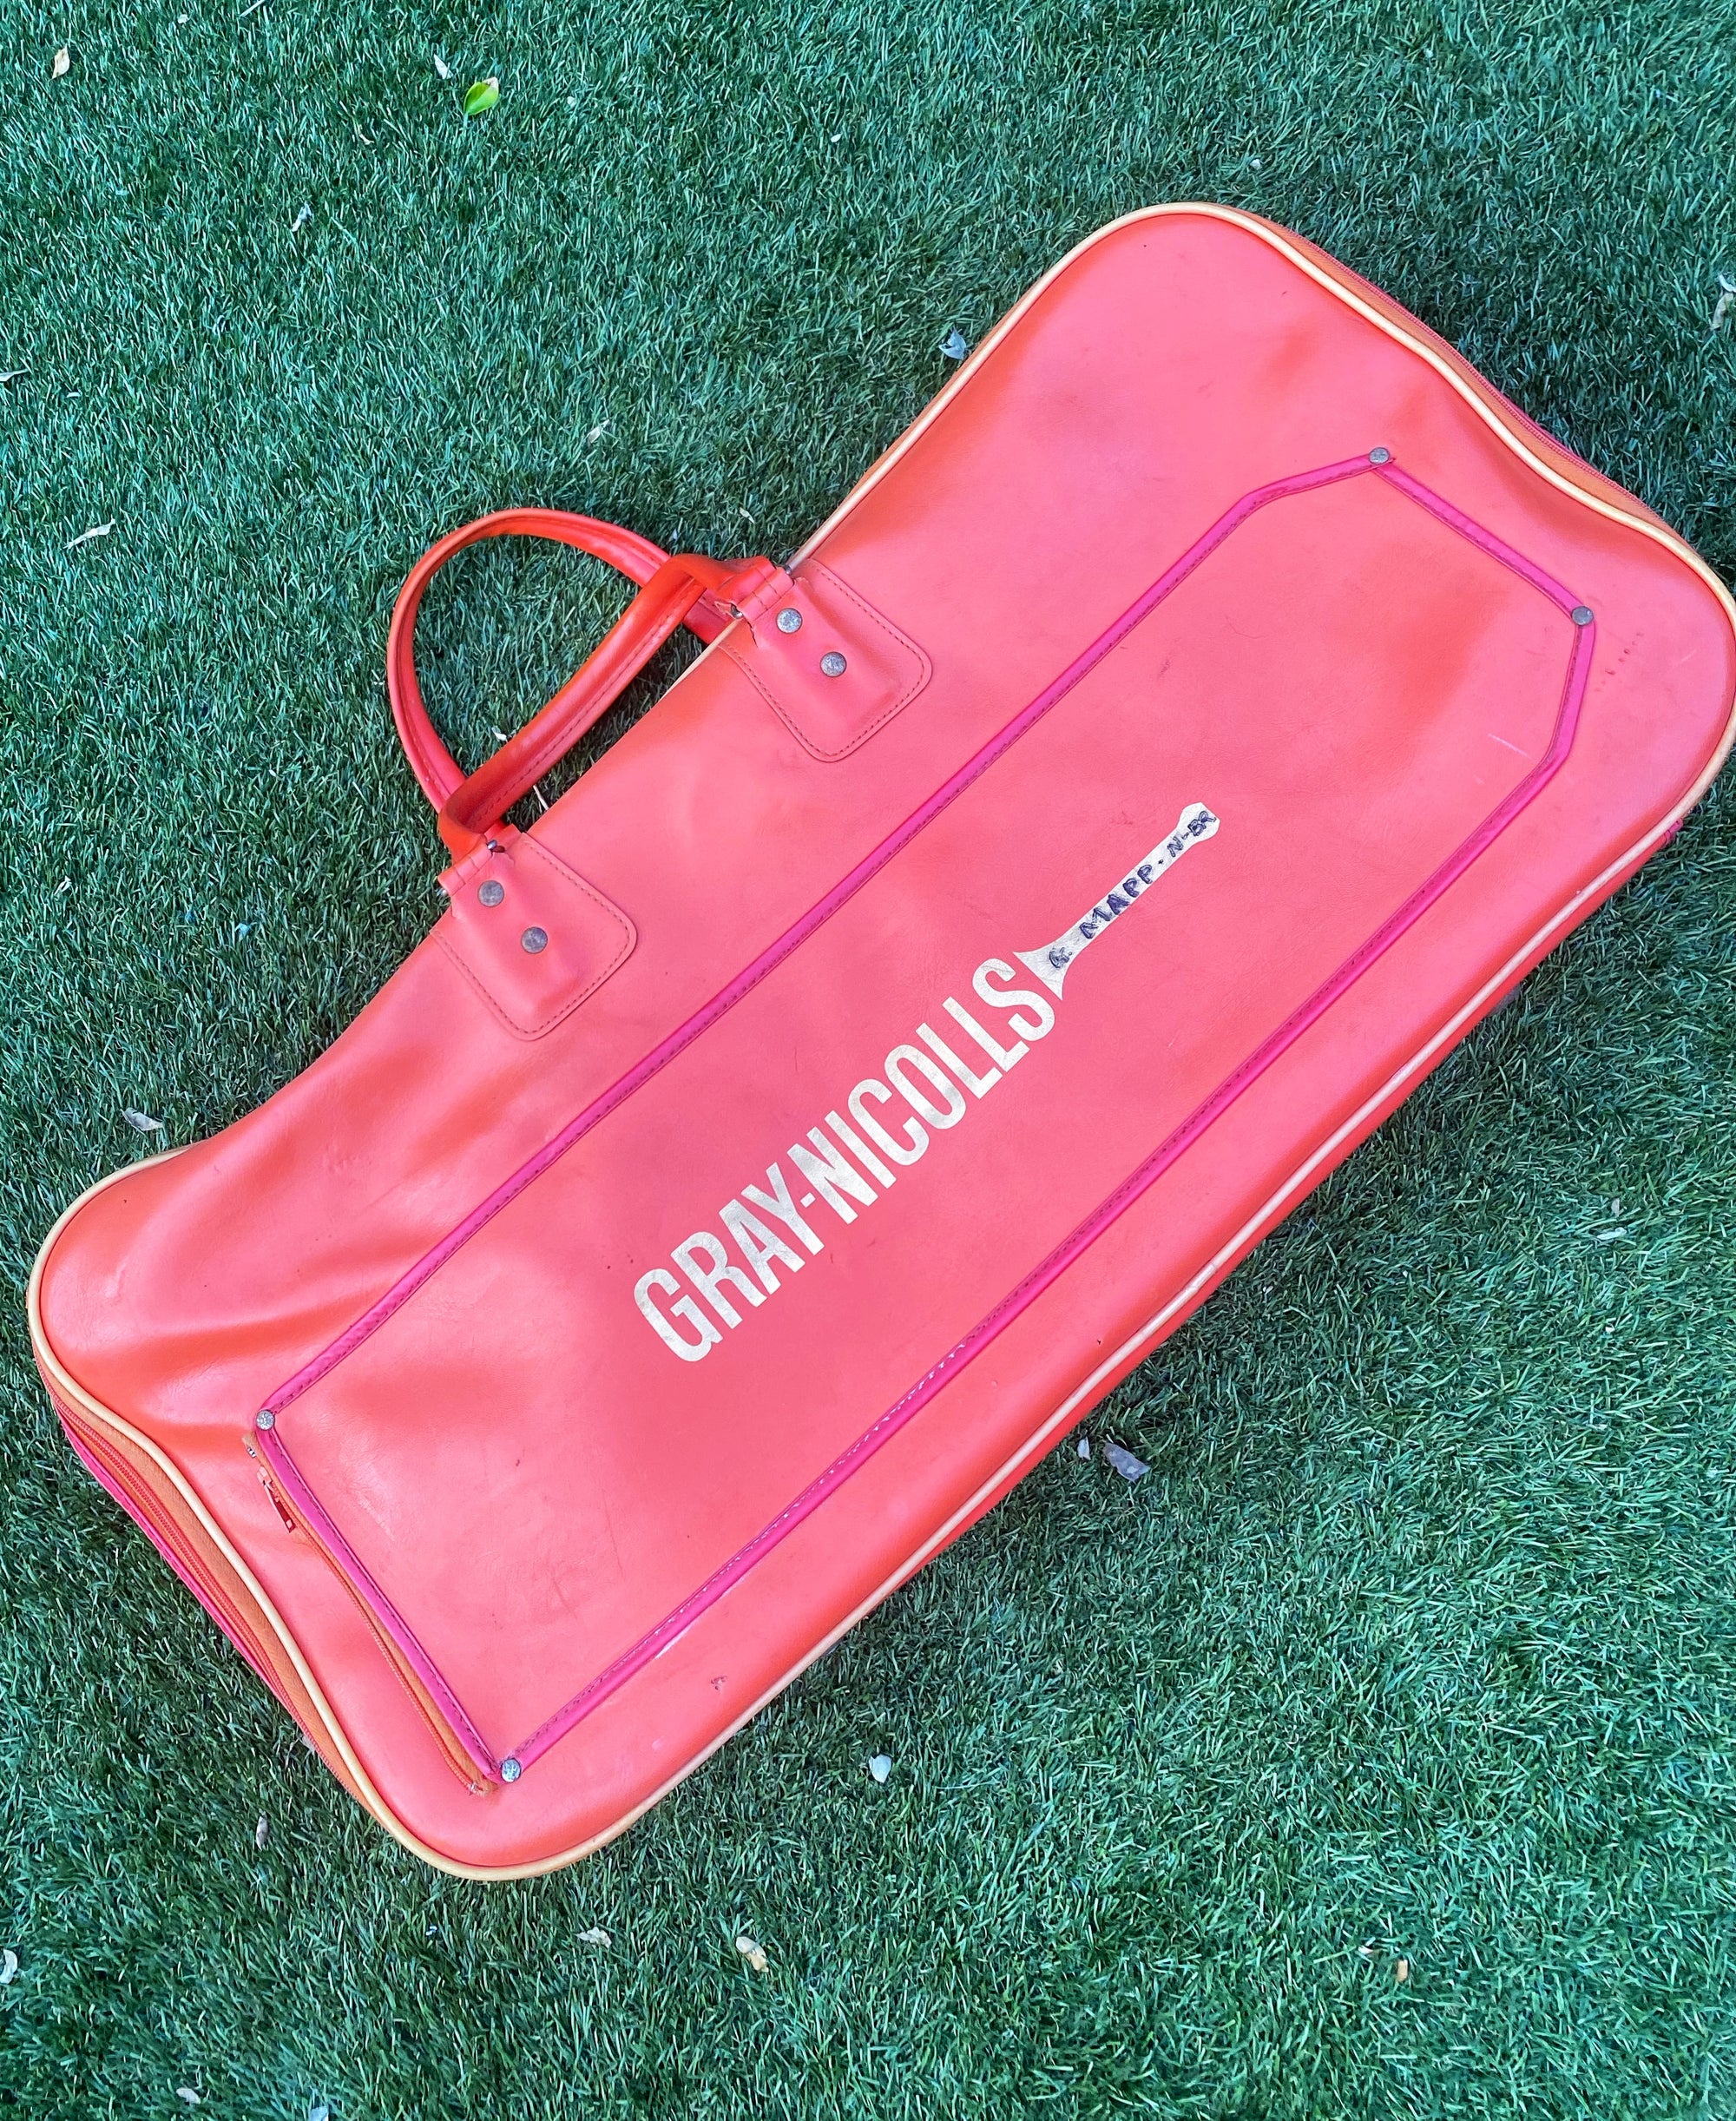 Vintage Orange Gray-Nicholls Cricket/Weekender Travel Bag